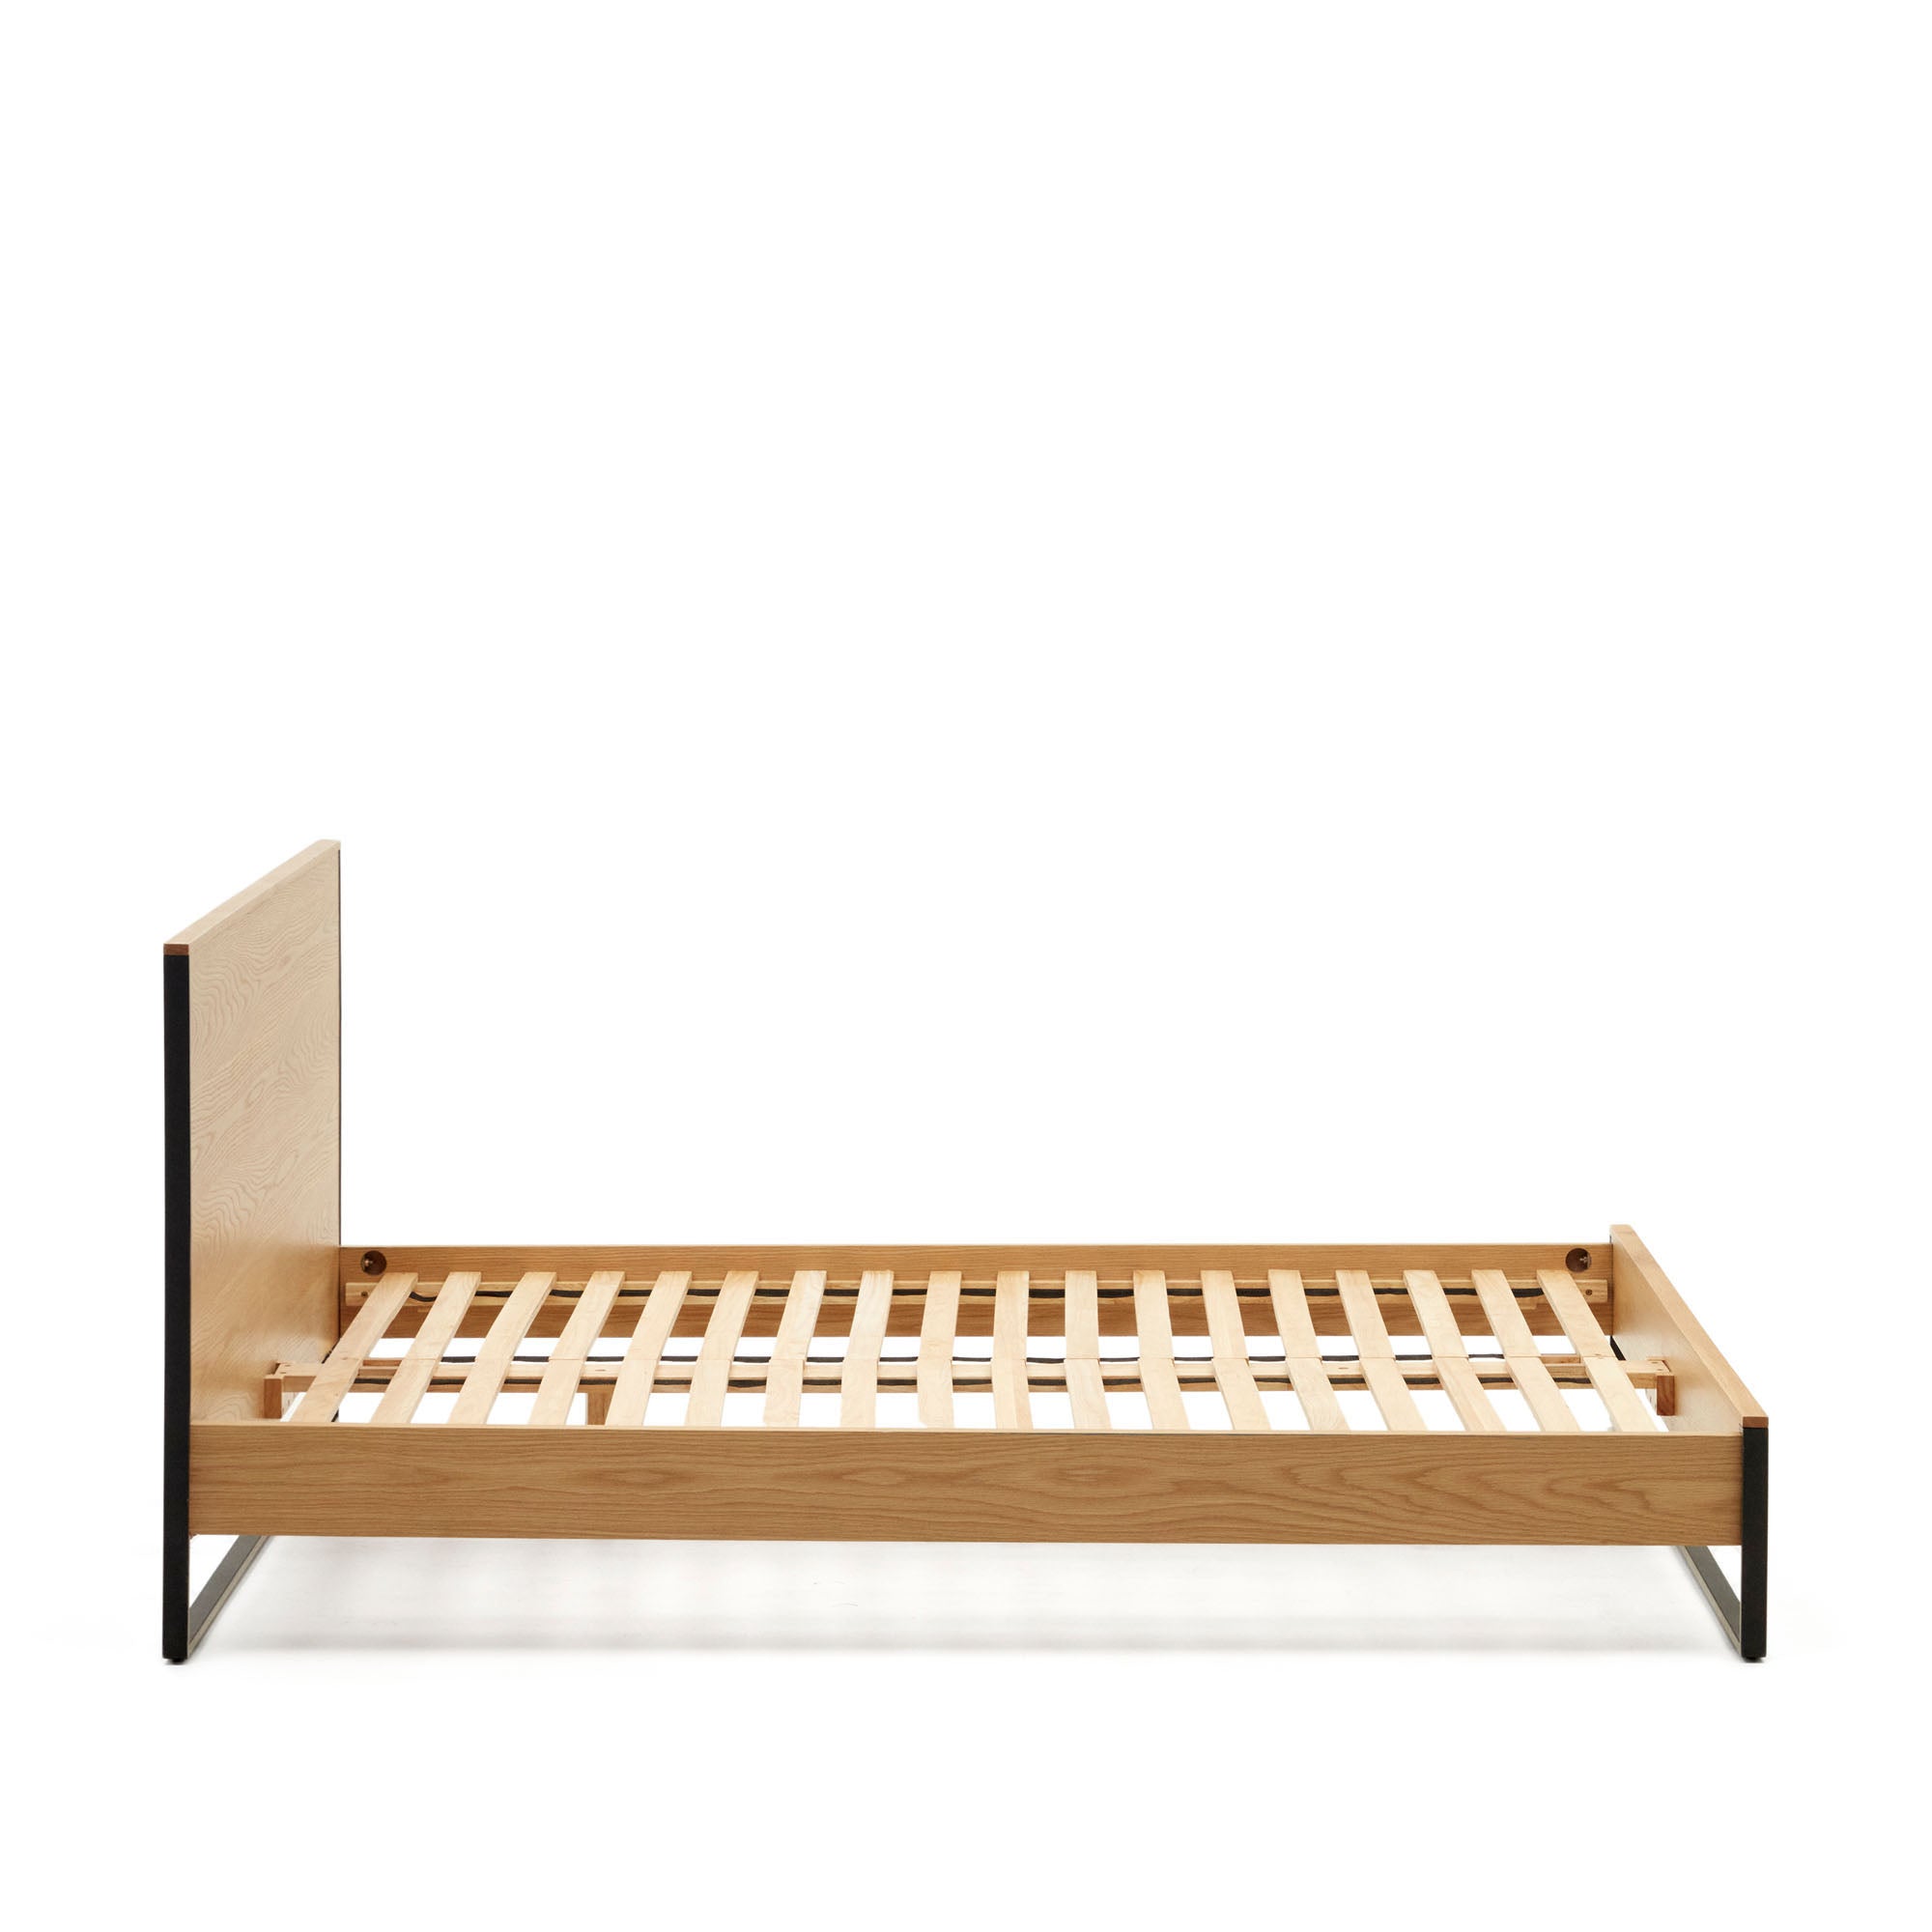 Taiana oak wood veneer bed with steel legs in a black finish, 160 x 200 cm